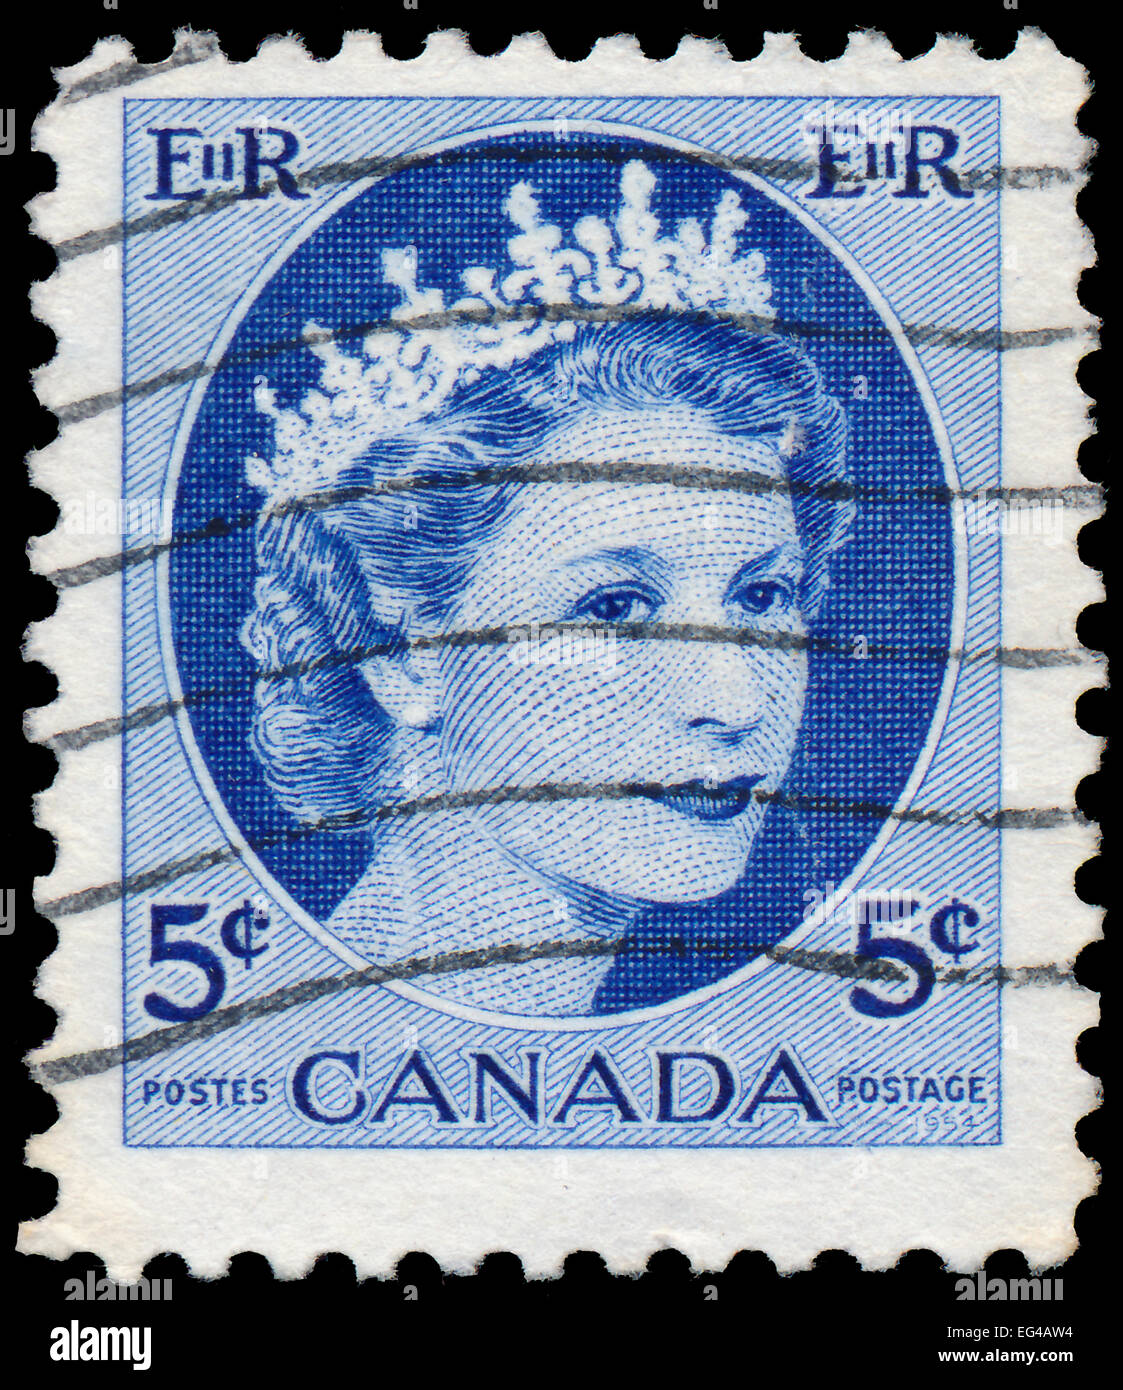 CANADA - 1954 CIRCA: timbro stampato dal Canada, mostra la regina Elisabetta II, 1954 circa Foto Stock